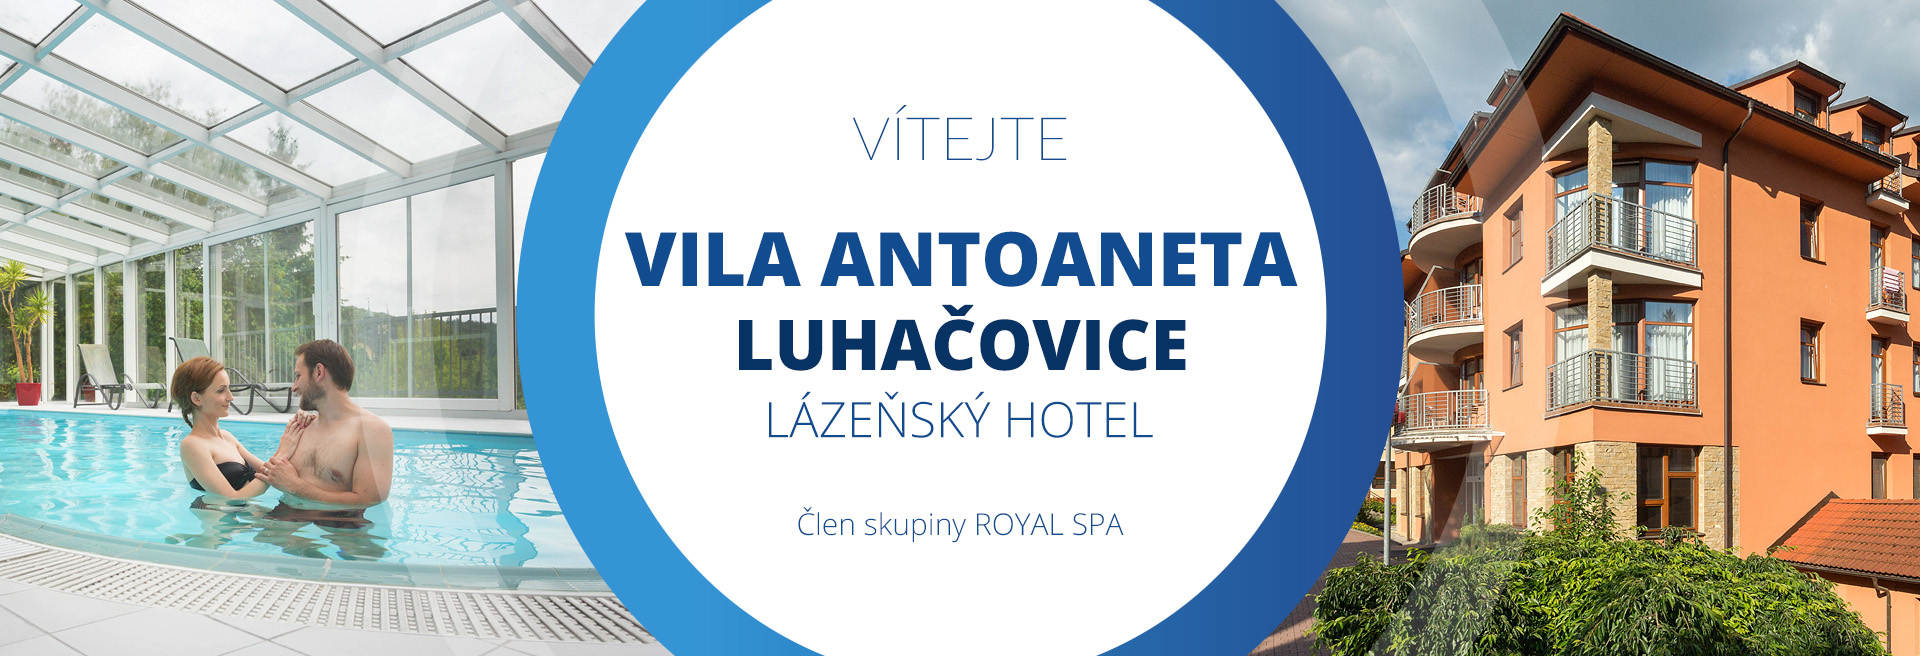 Ubytovanie - Kúpeľný hotel VILA ANTOANETA Luhačovice